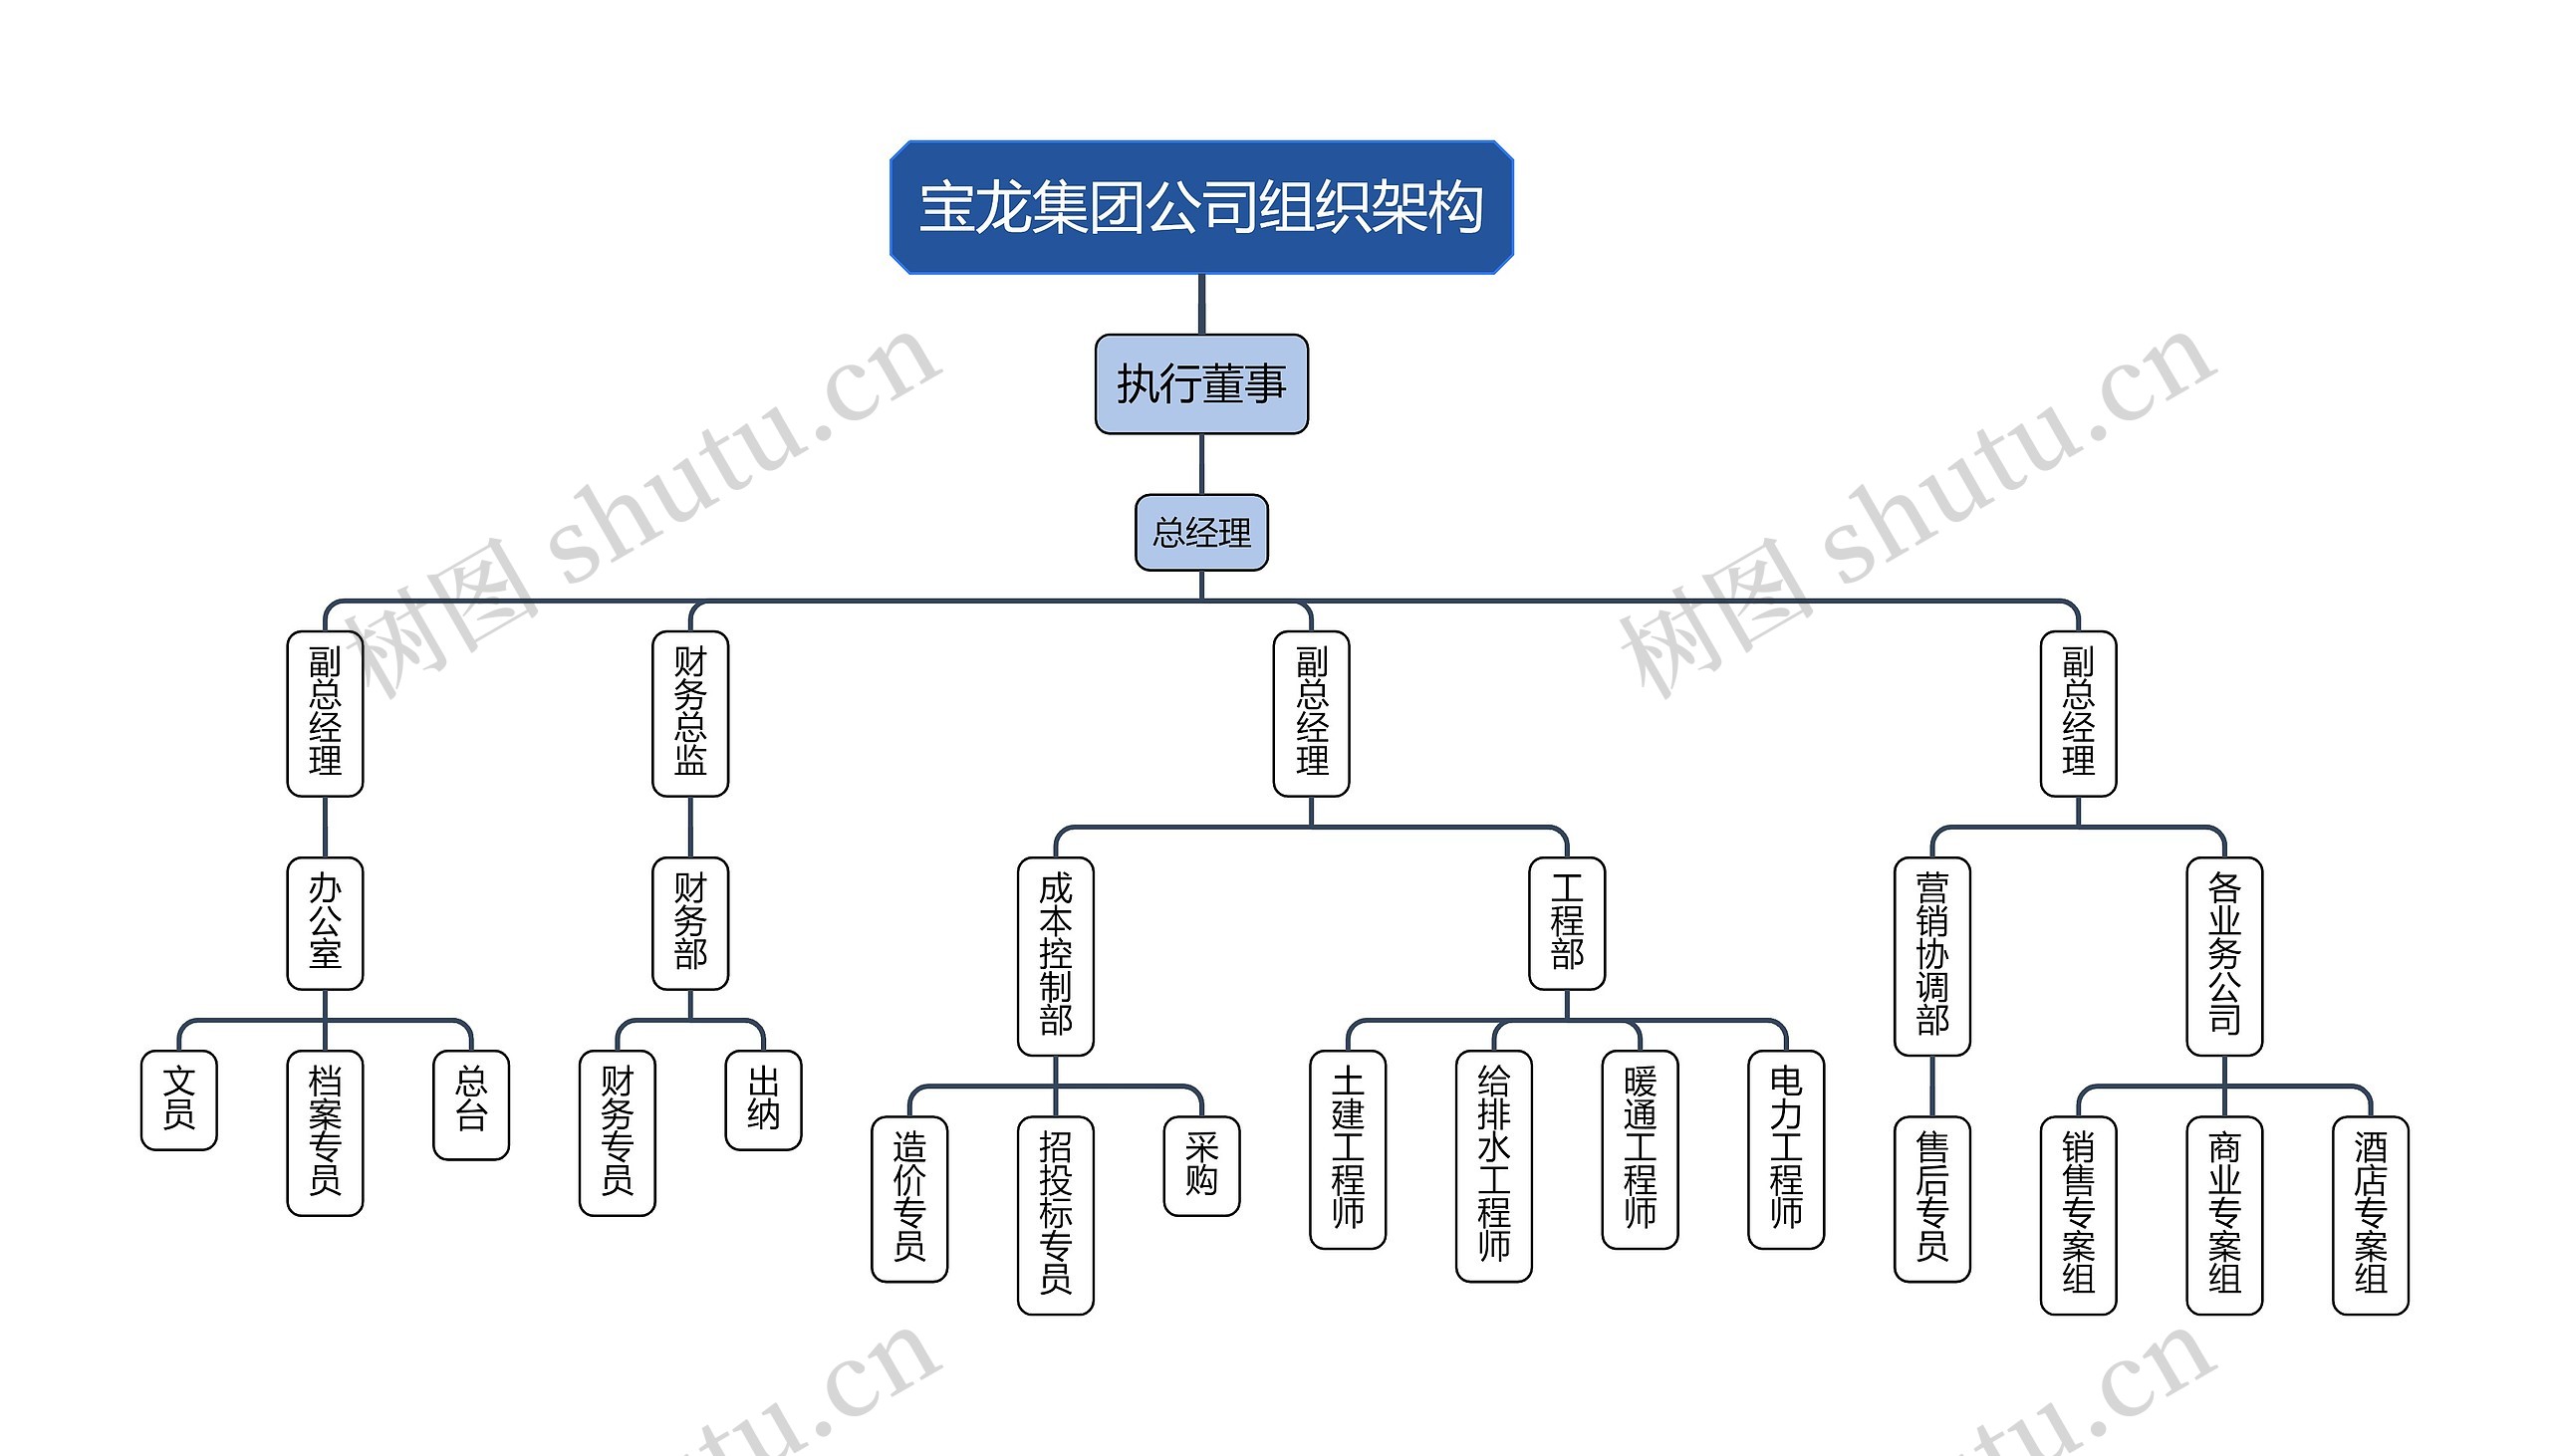 宝龙集团公司组织架构思维导图